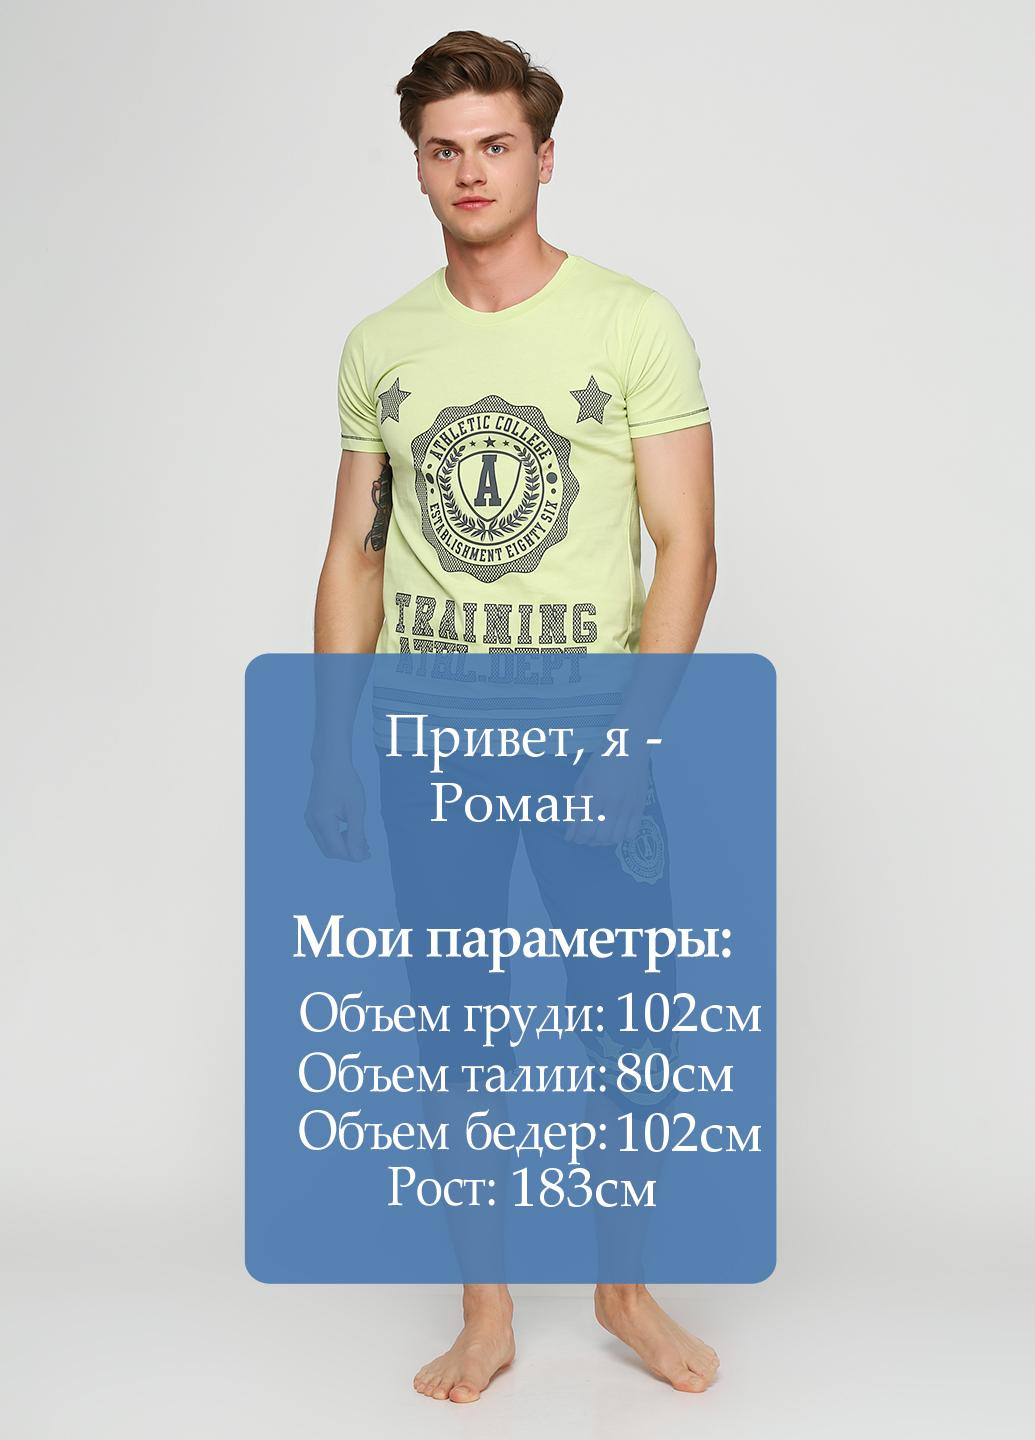 Салатовый демисезонный комплект (футболка, бриджи) Ipektenim